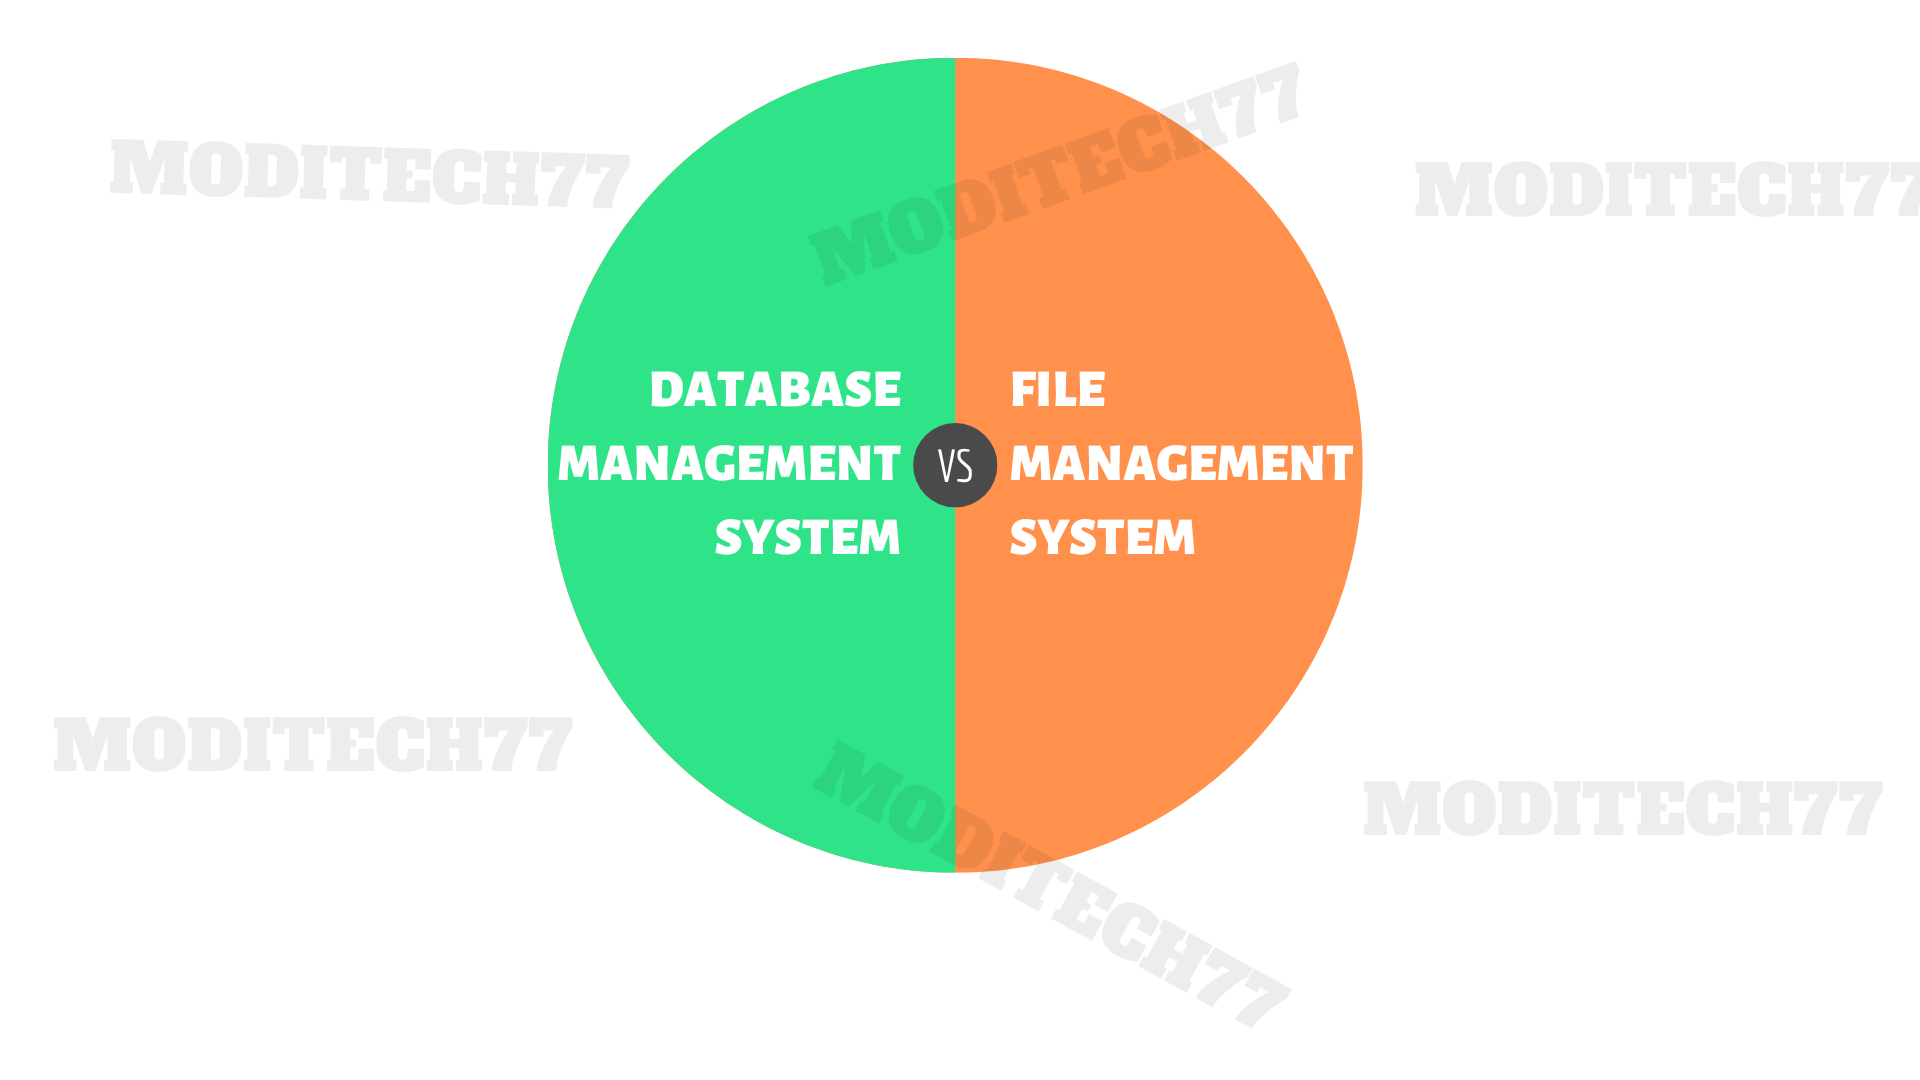 DBMS Vs File Management System